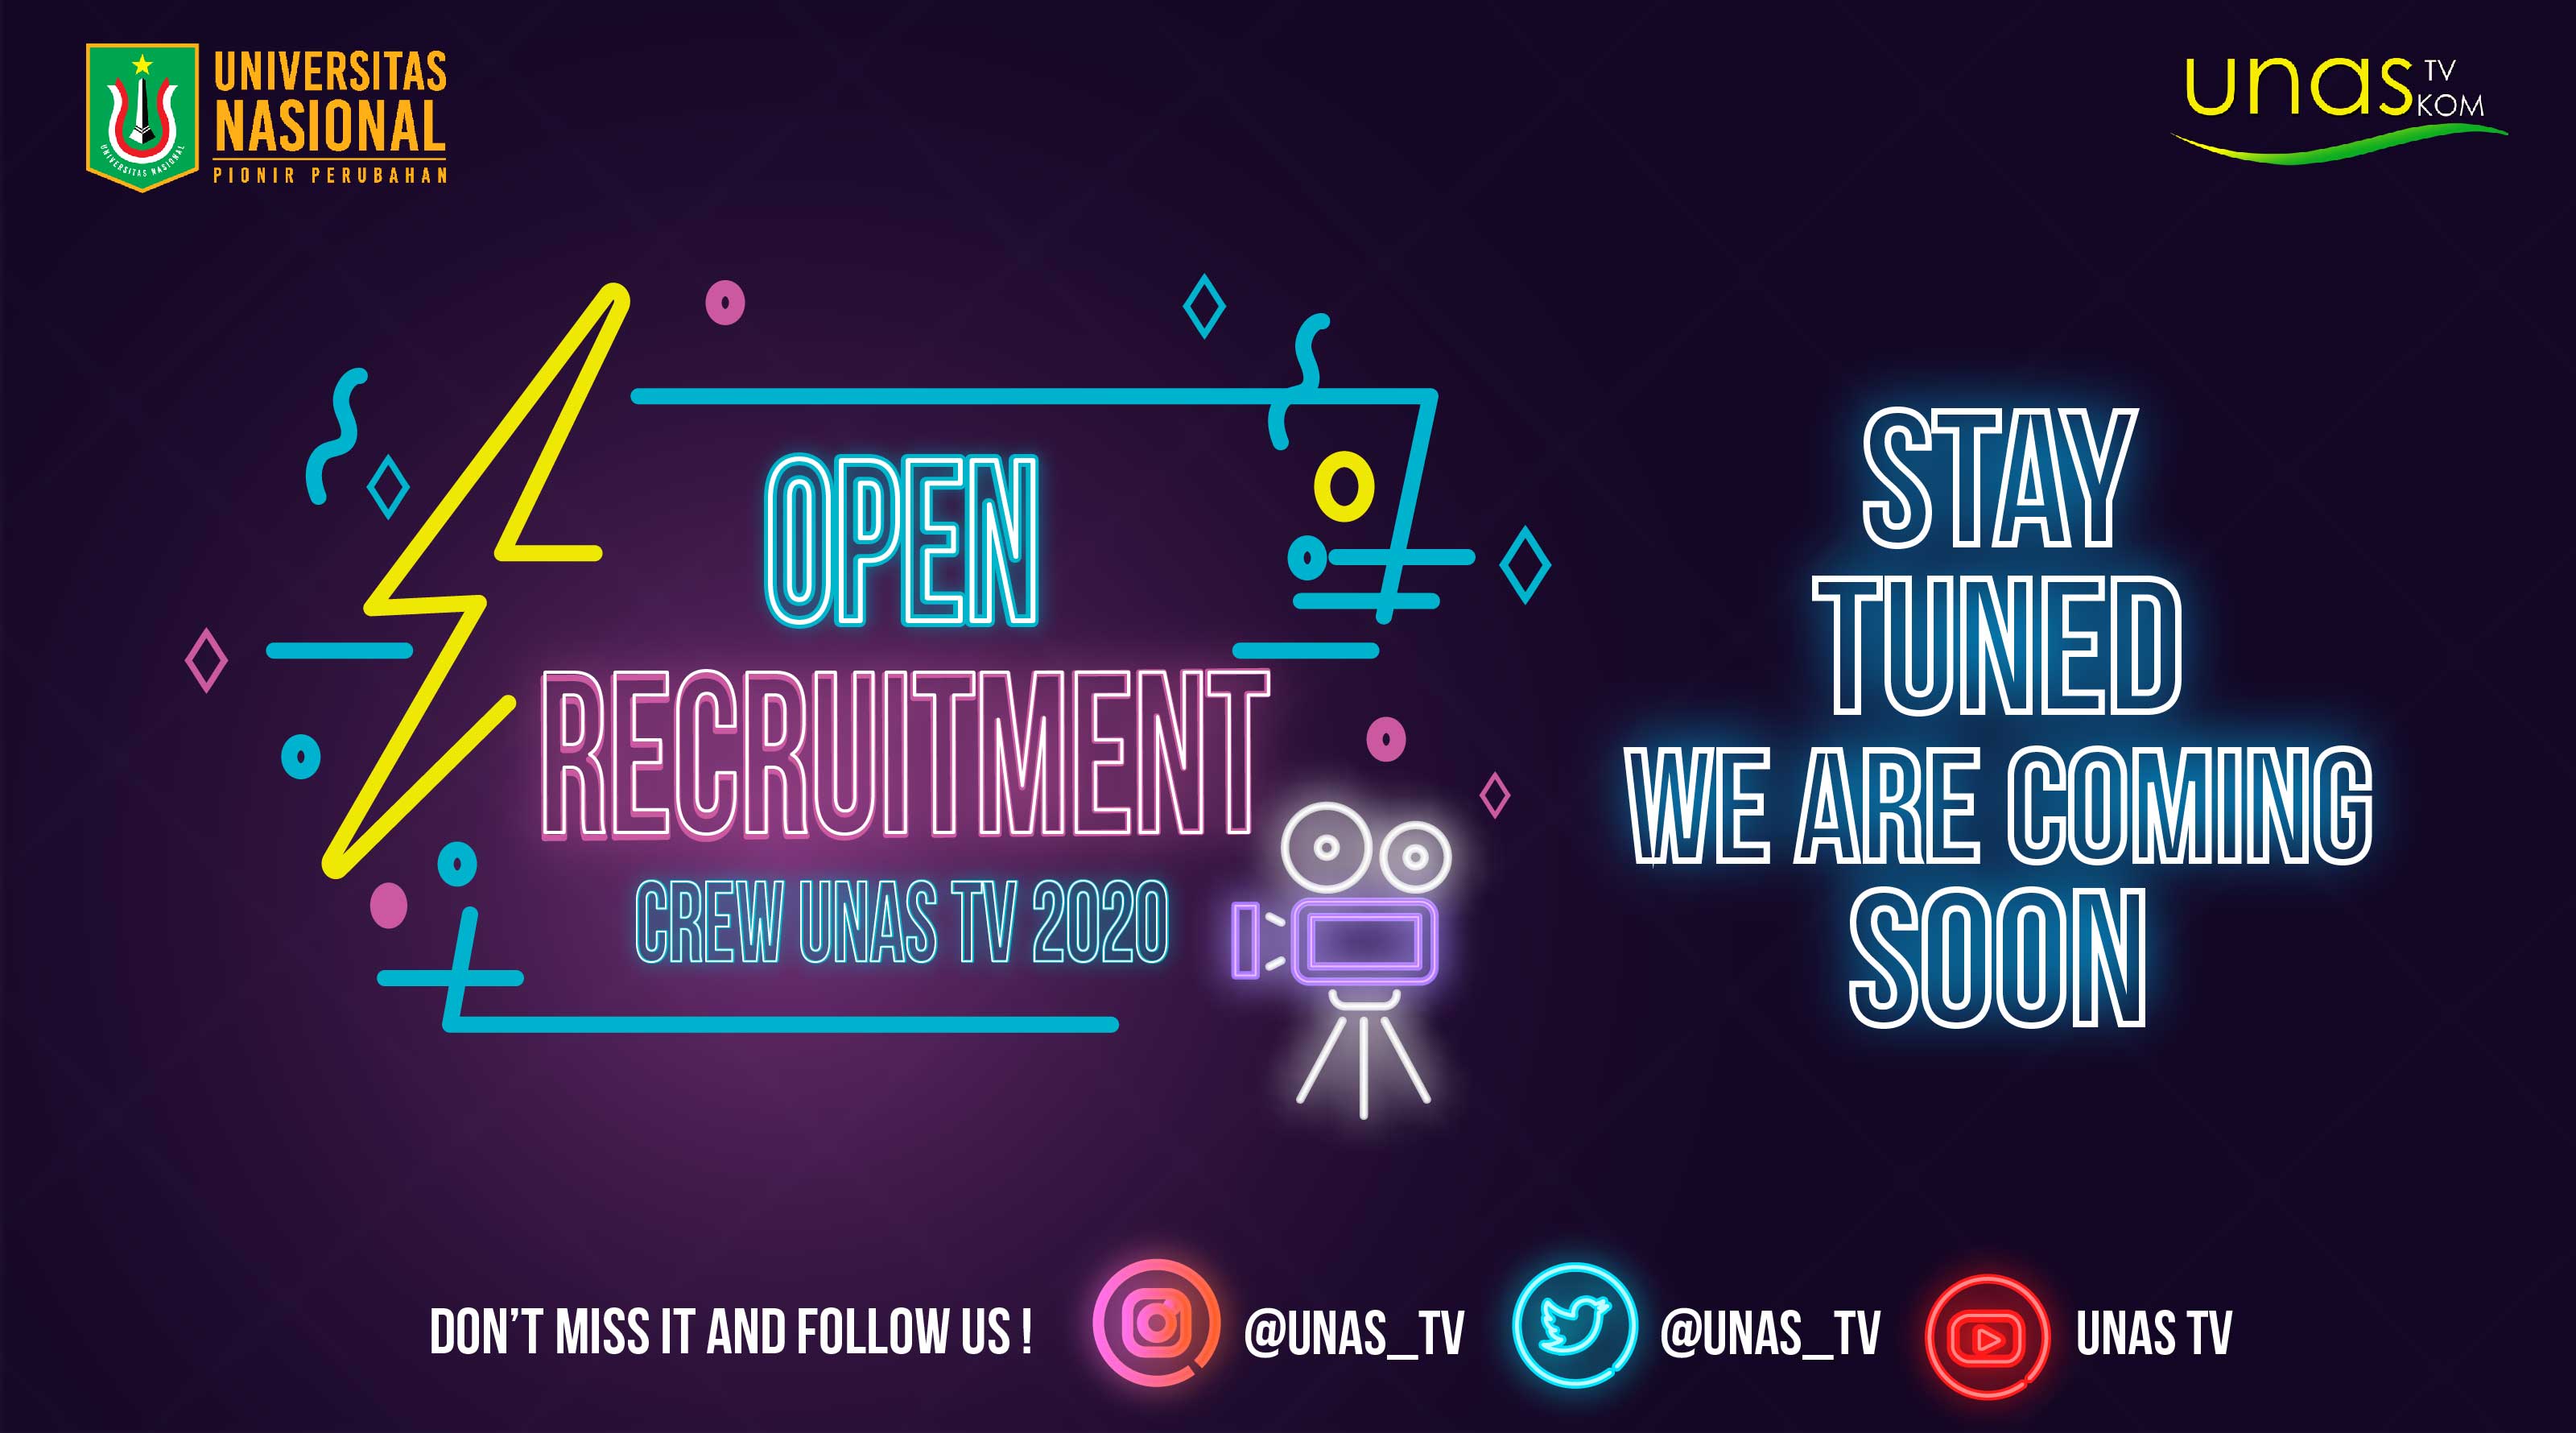 Open Recruitment Crew UNAS TV 2020